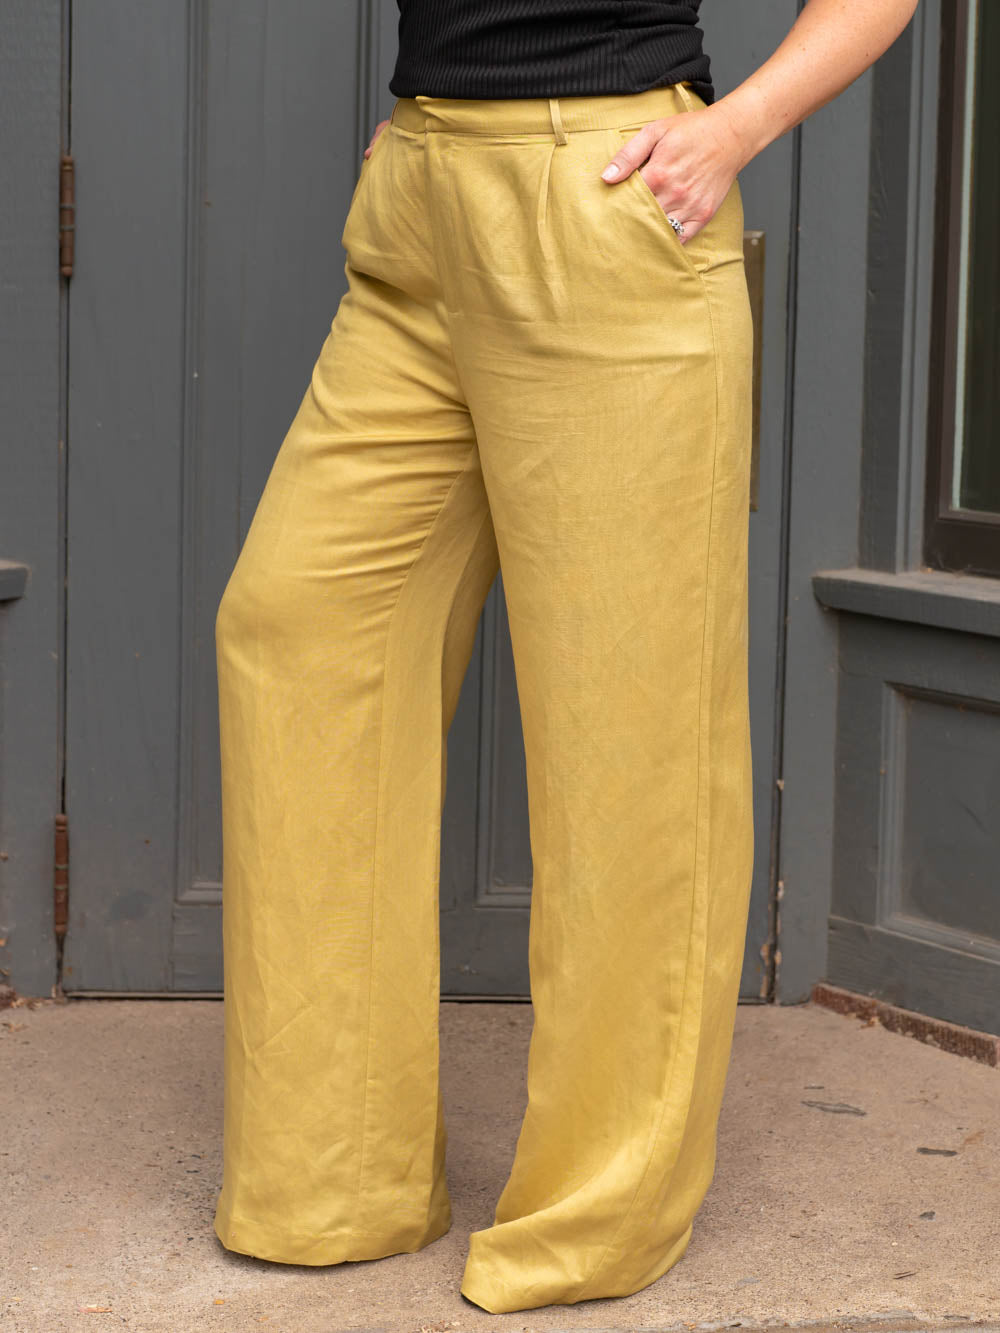 Electra Long Inseam Linen Pant for Tall Women - Amalli Talli